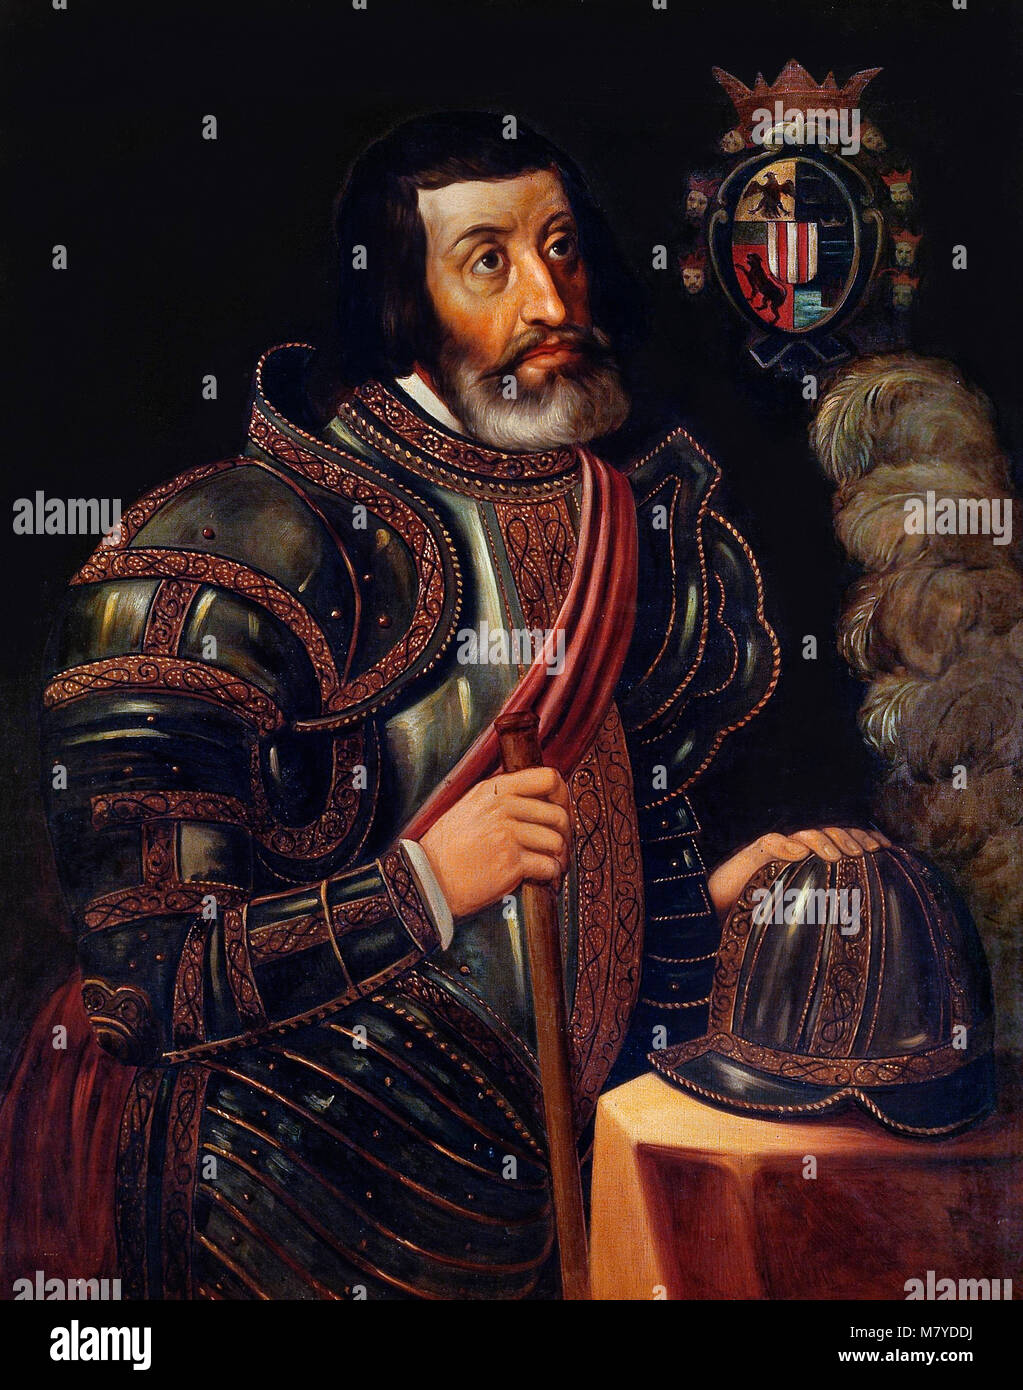 Hernán Cortés de Monroy y Pizarro Altamirano, Marquis of the Valley of Oaxaca (1485-1547). Portrait of the Spanish conquistador, Hernan Cortes, by José Salomé Pina, oil on canvas, c.1879. Stock Photo